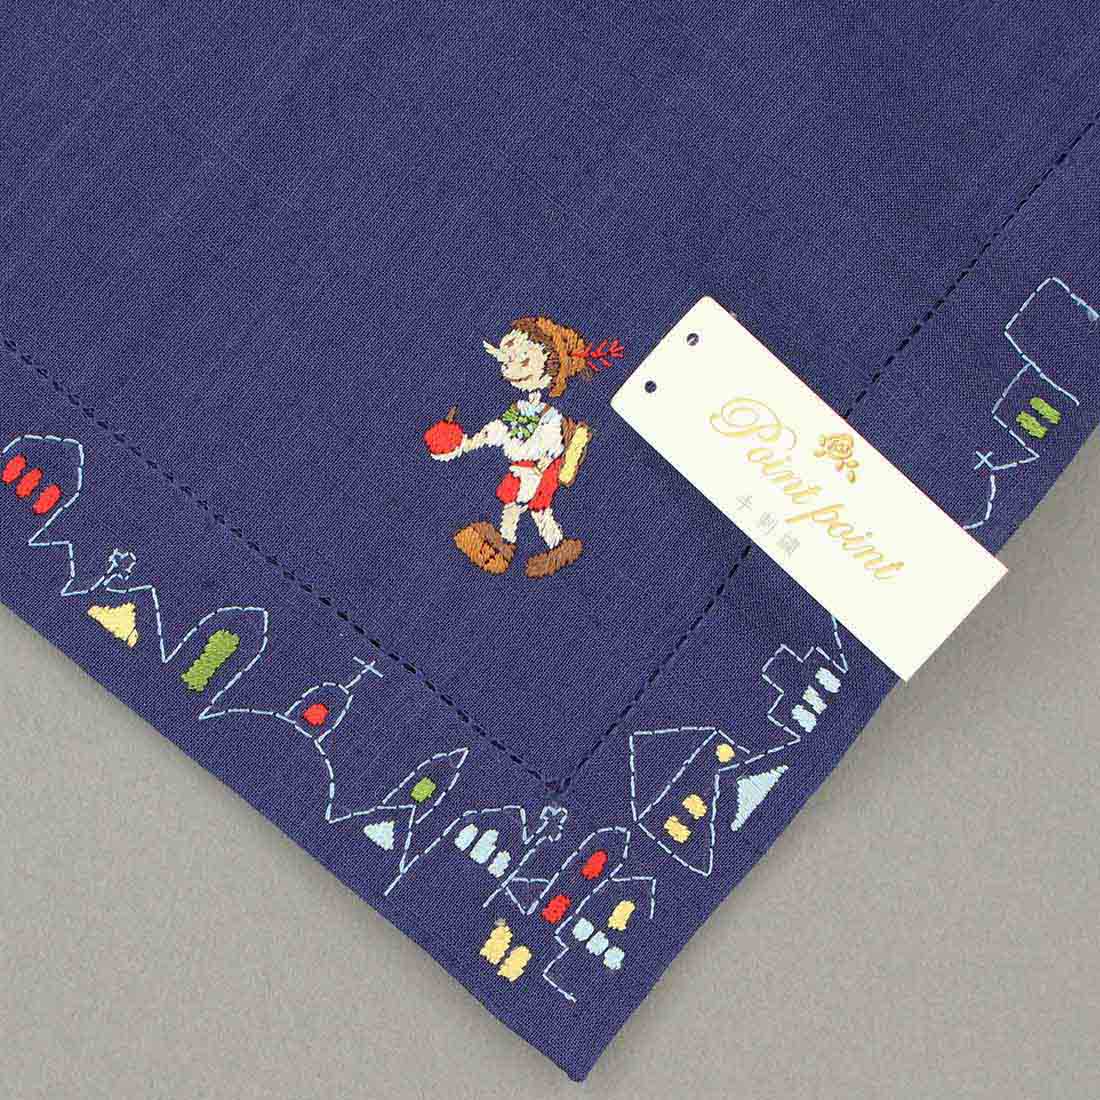 「ピノキオ」 ベトナム手刺繍ハンカチ 7501 ネイビー